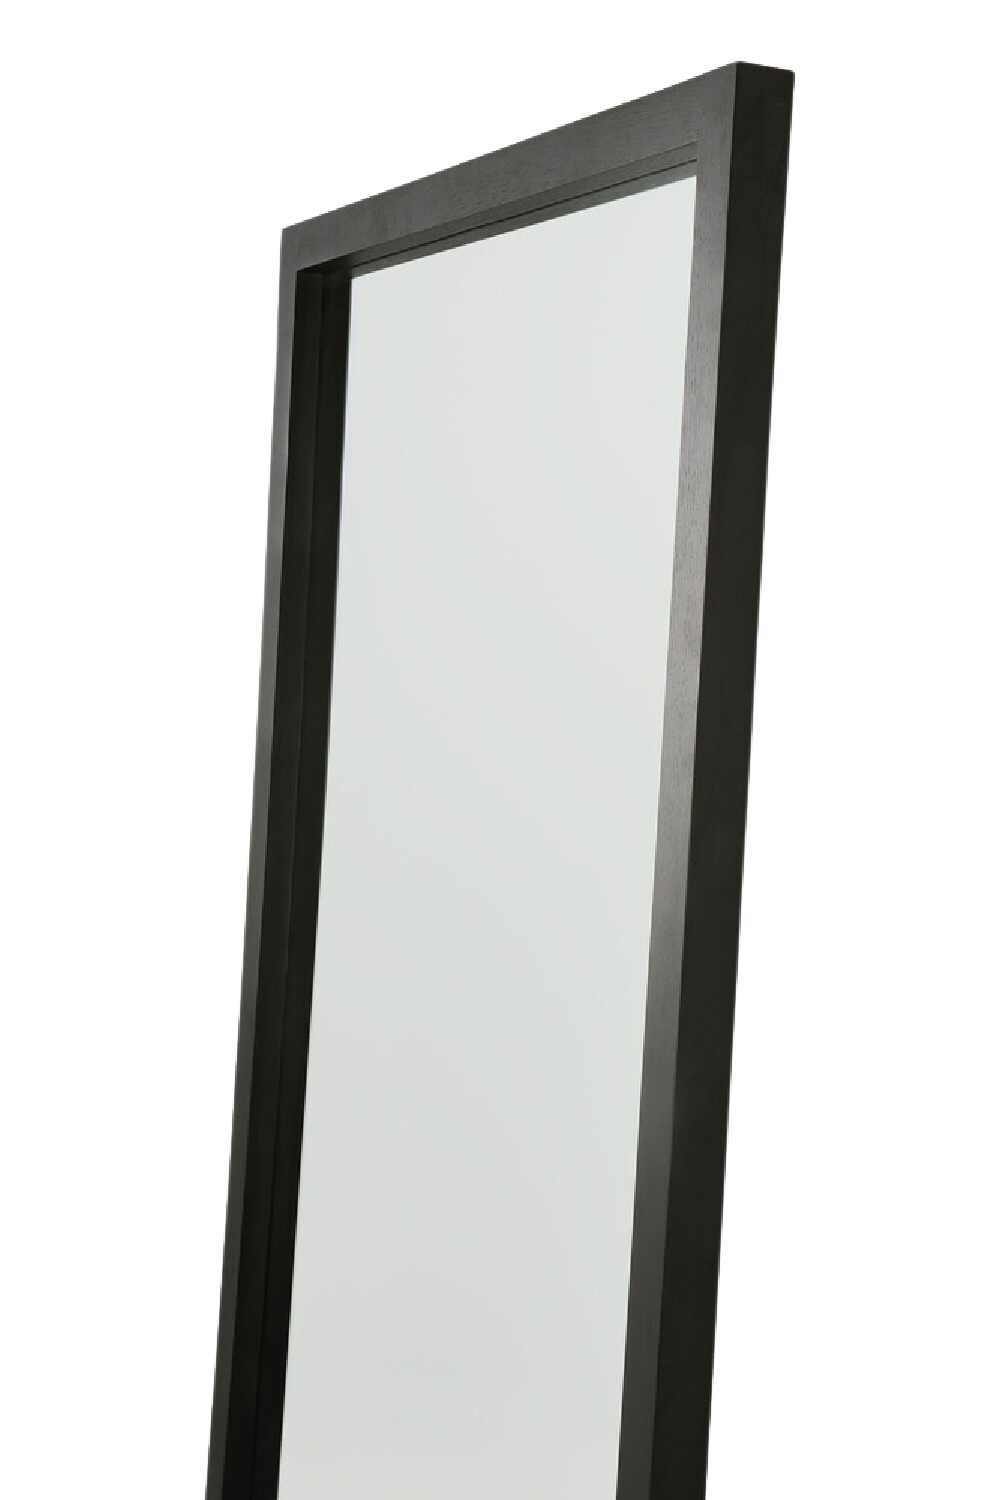 Oak Full-Length Floor Mirror | Ethnicraft Light Frame